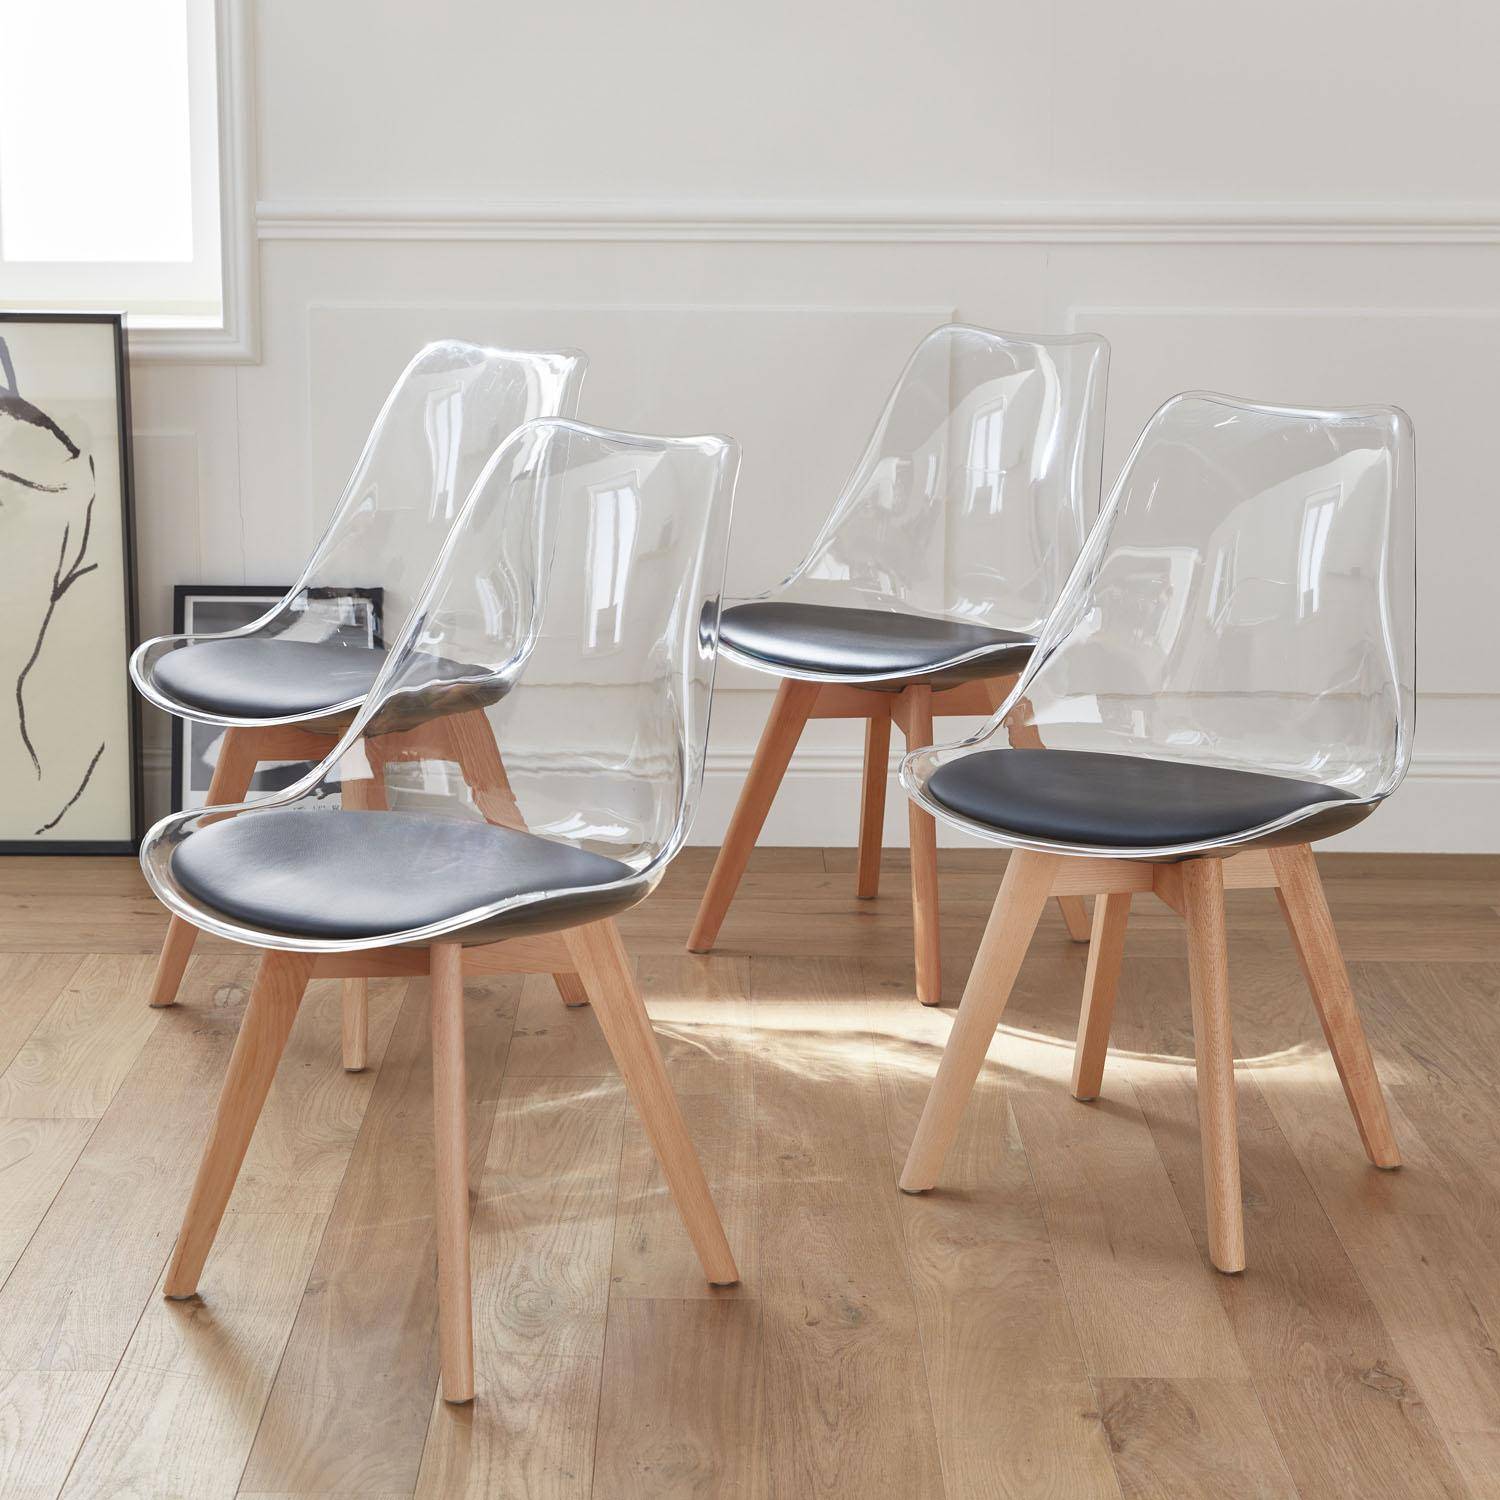 Lot de 4 chaises scandinaves - Lagertha - pieds bois, fauteuils 1 place, coussin noir, coque transparente  Photo2